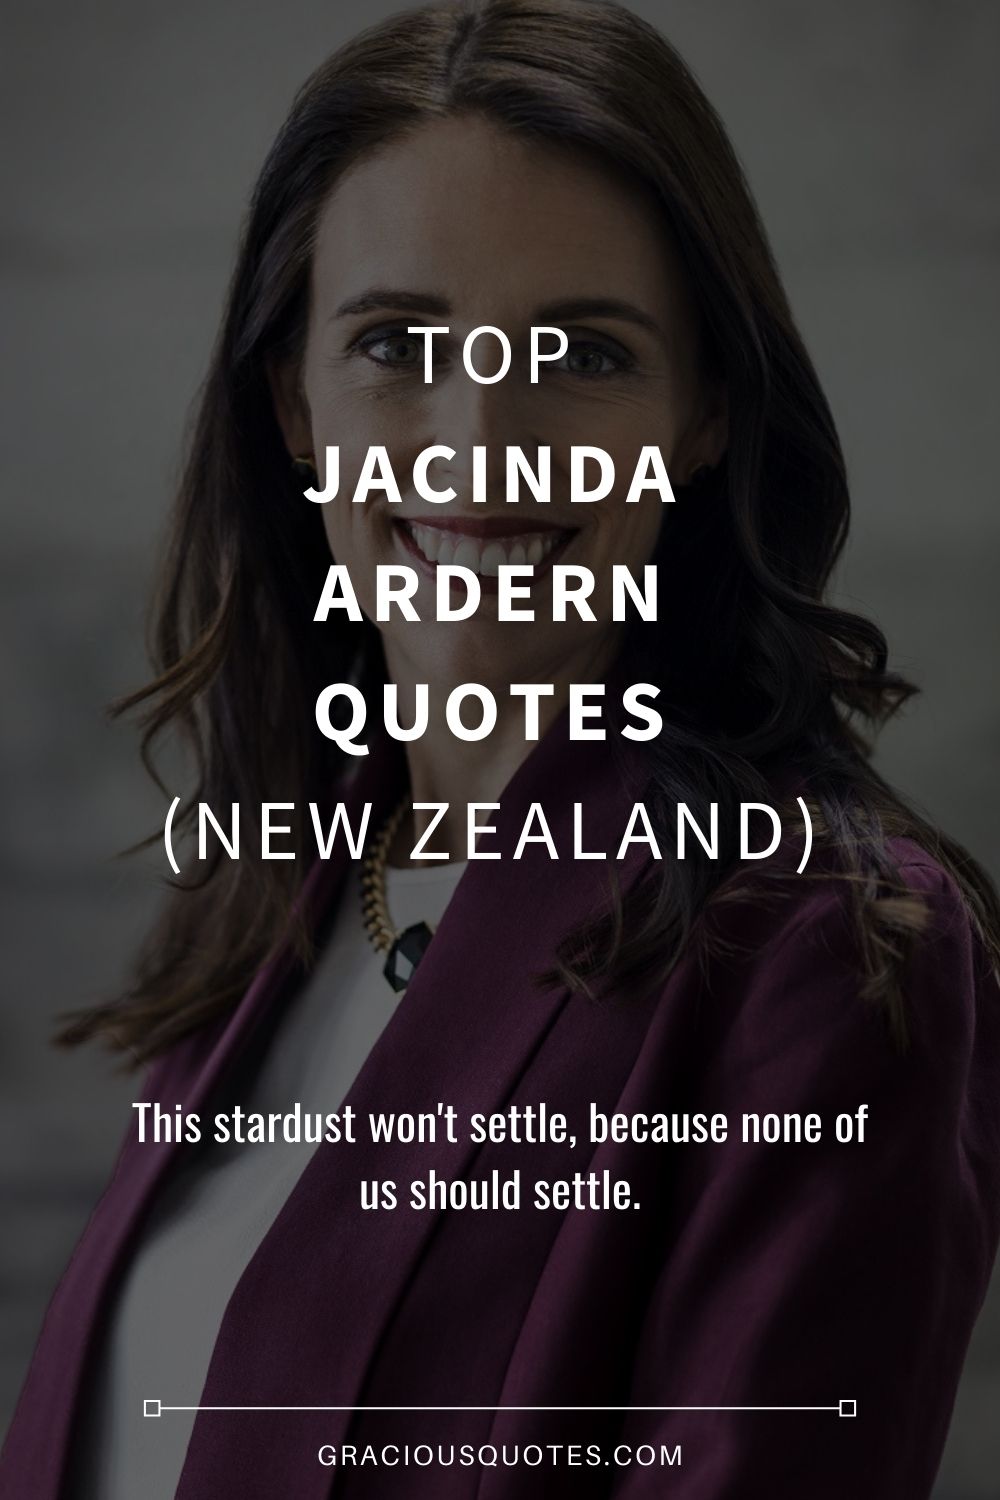 Top Jacinda Ardern Quotes (NEW ZEALAND) - Gracious Quotes